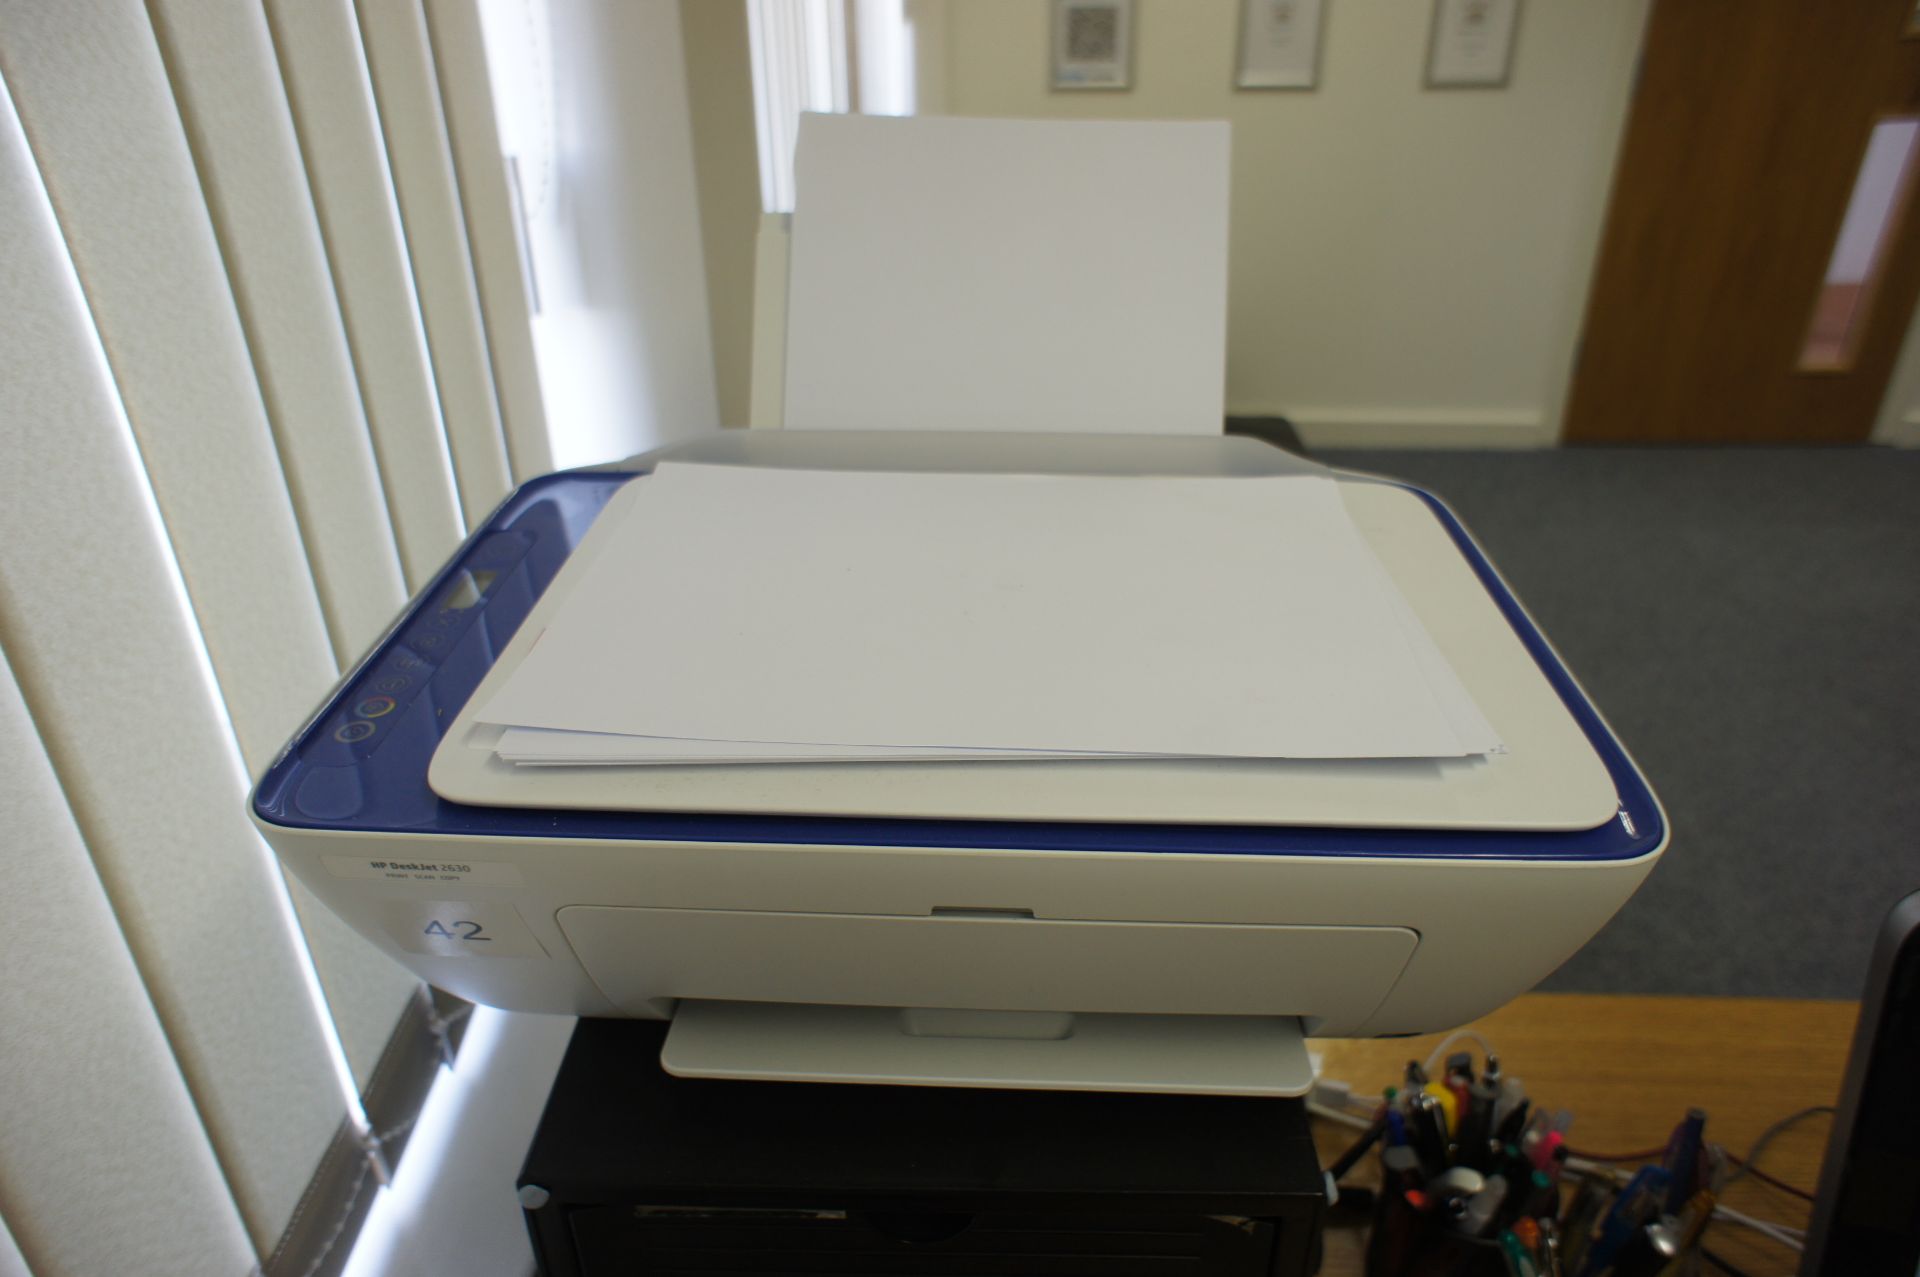 HP Deskjet 2630 Printer and Document Shredder